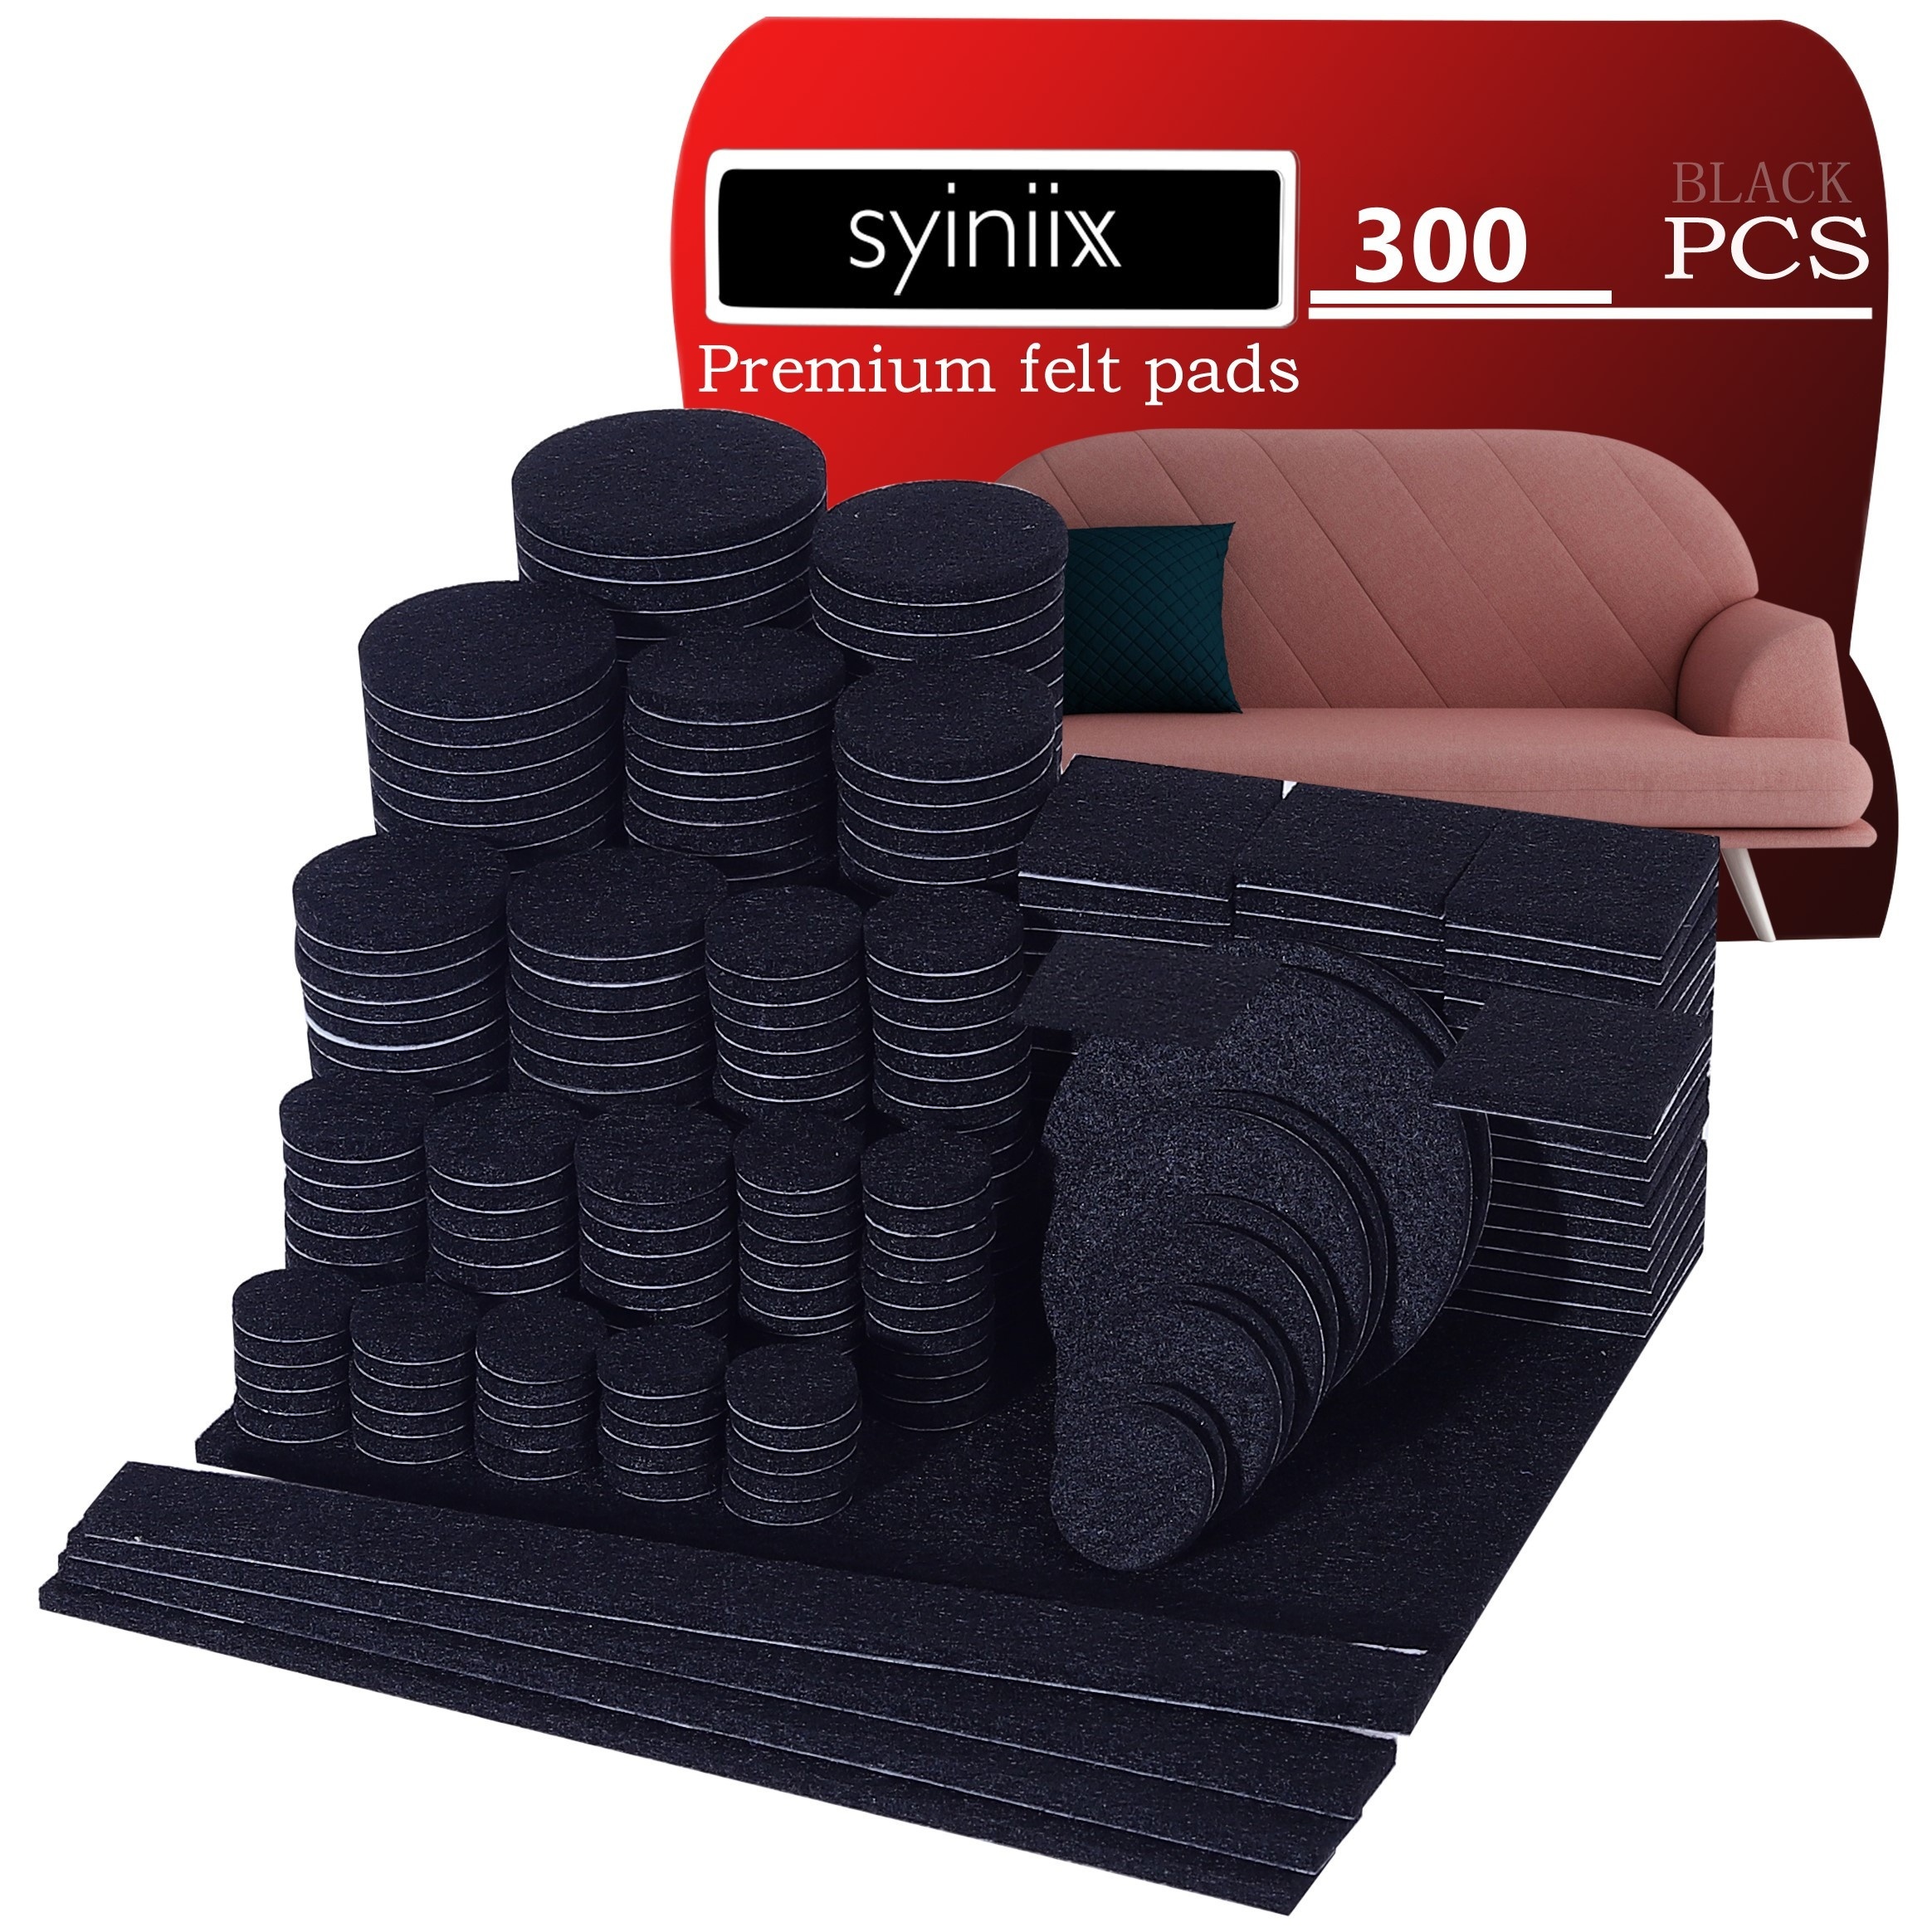 1Sheet Adhesive Felt Fabric Large Adhesive Felt Shelf Liner Pad Black  Sticky Back Roll 